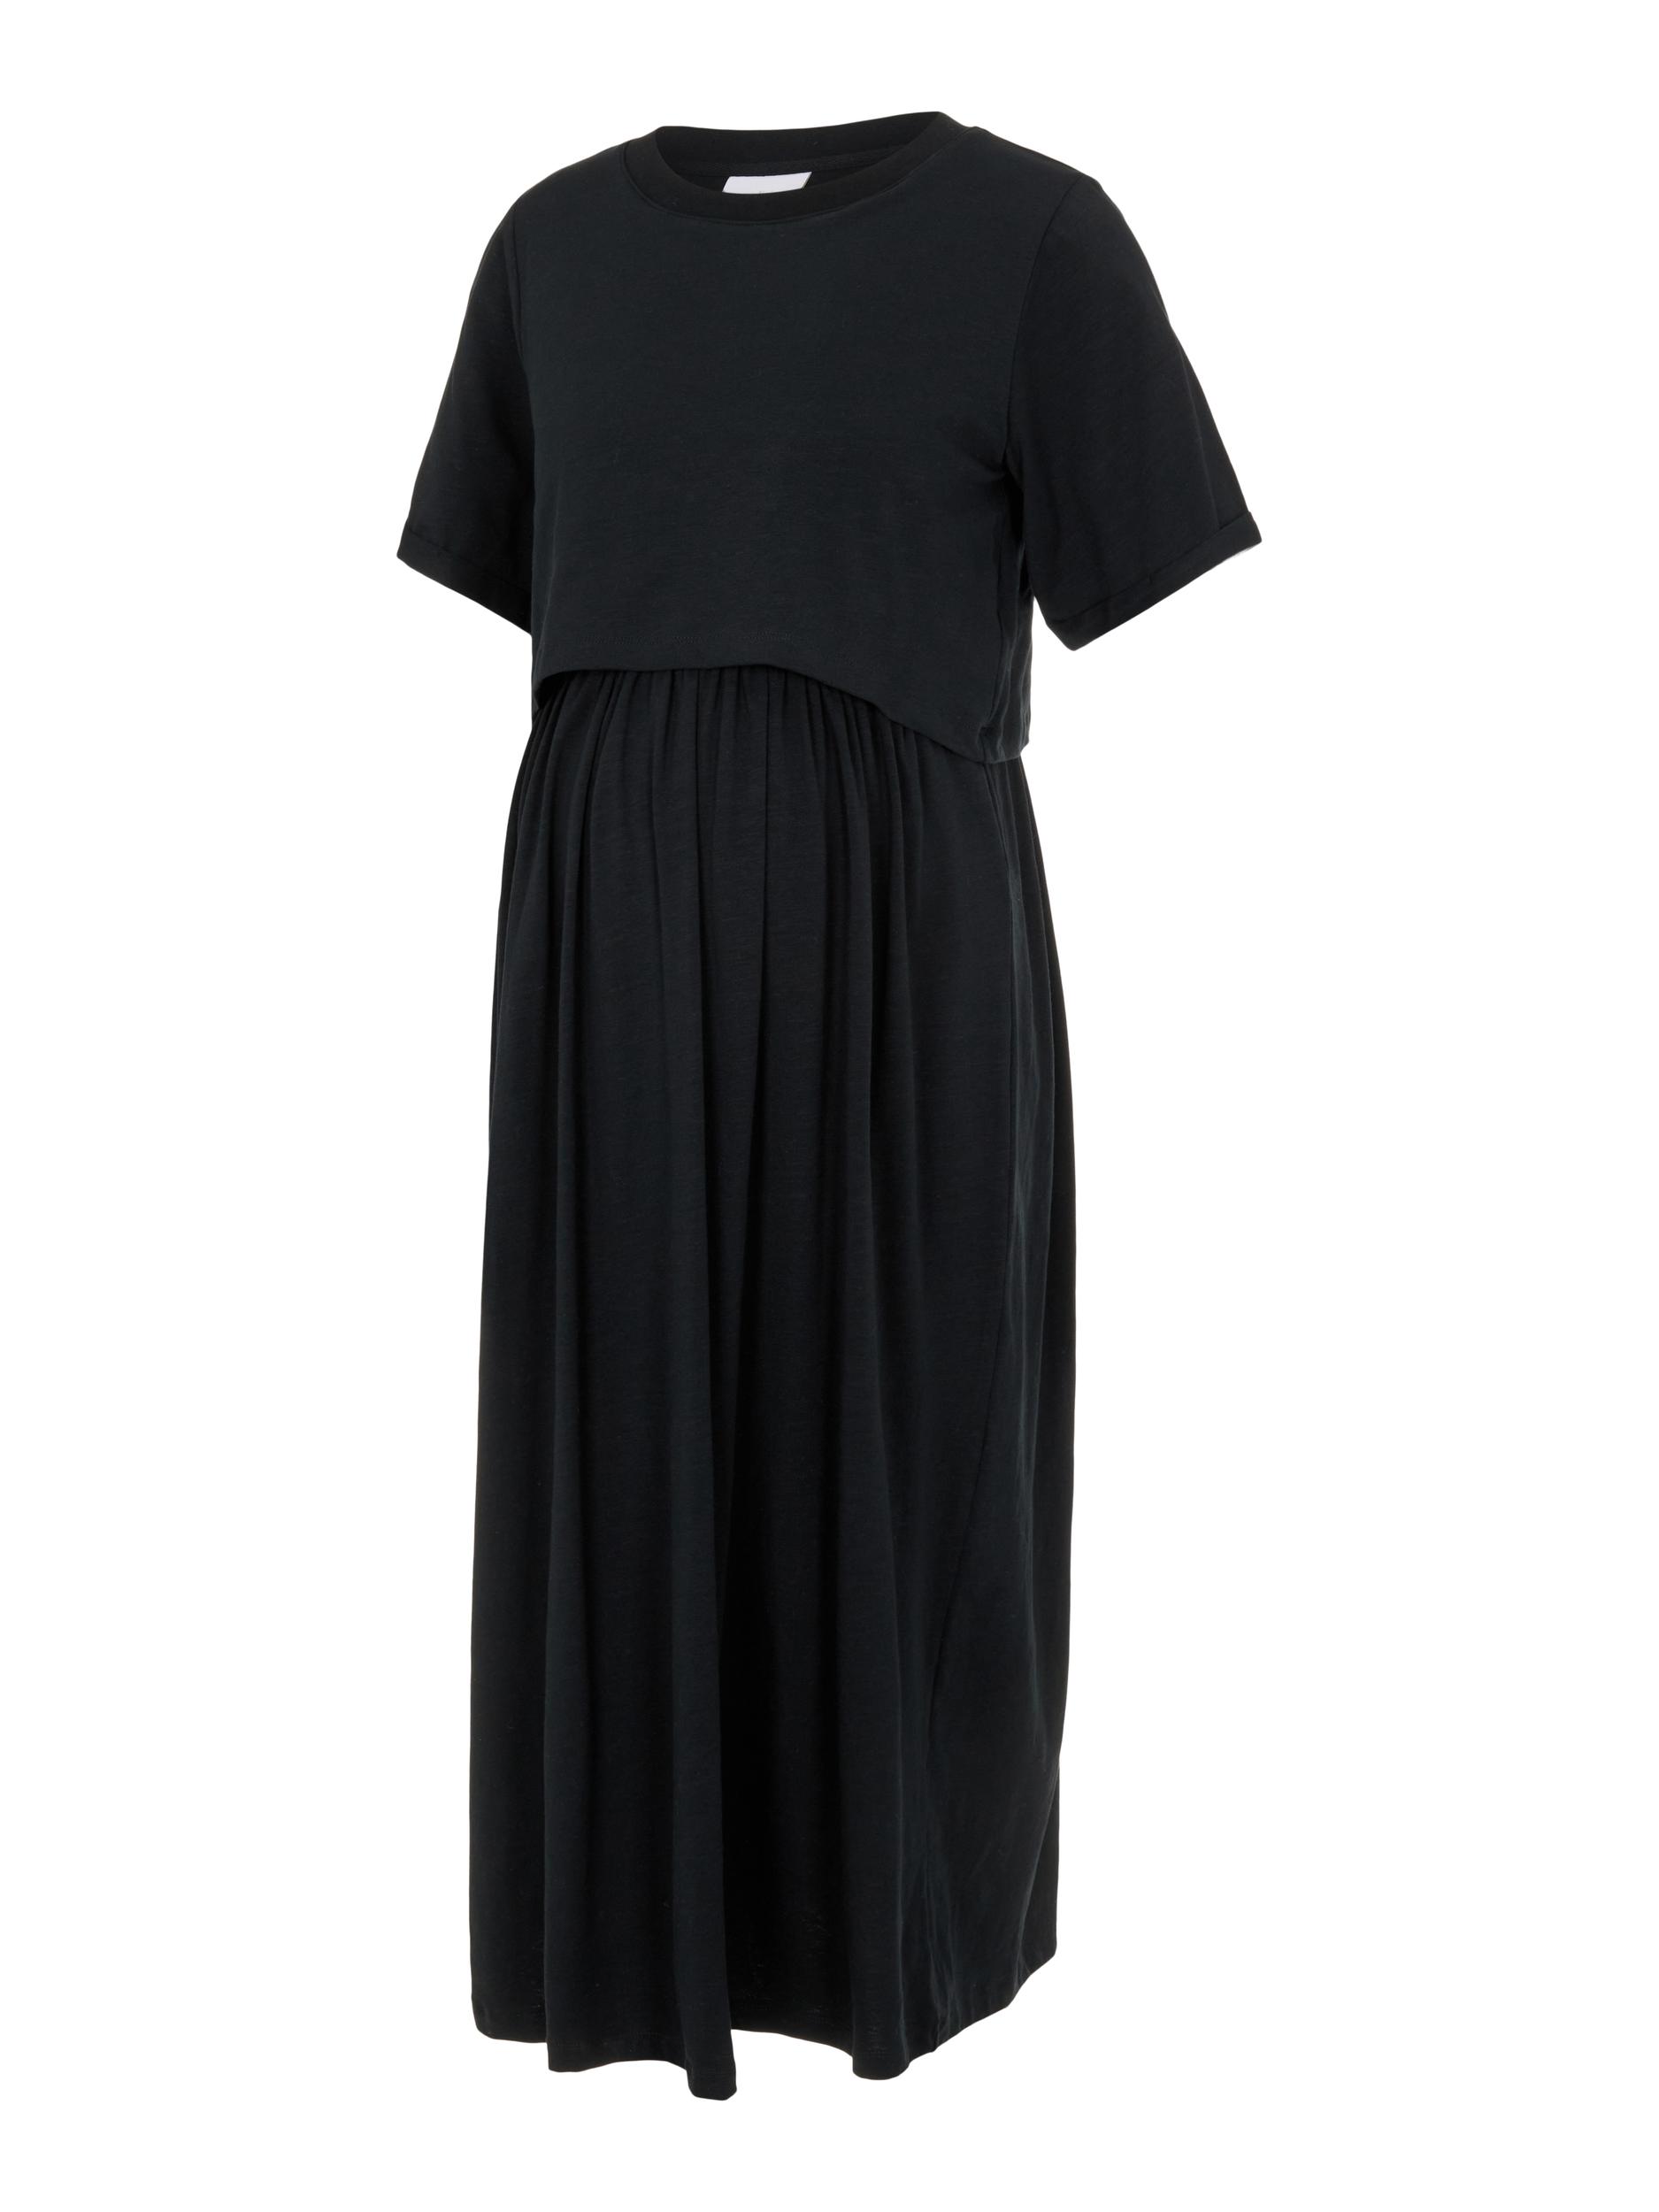 Odzież Kobiety MAMALICIOUS Sukienka Meadow w kolorze Czarnym 